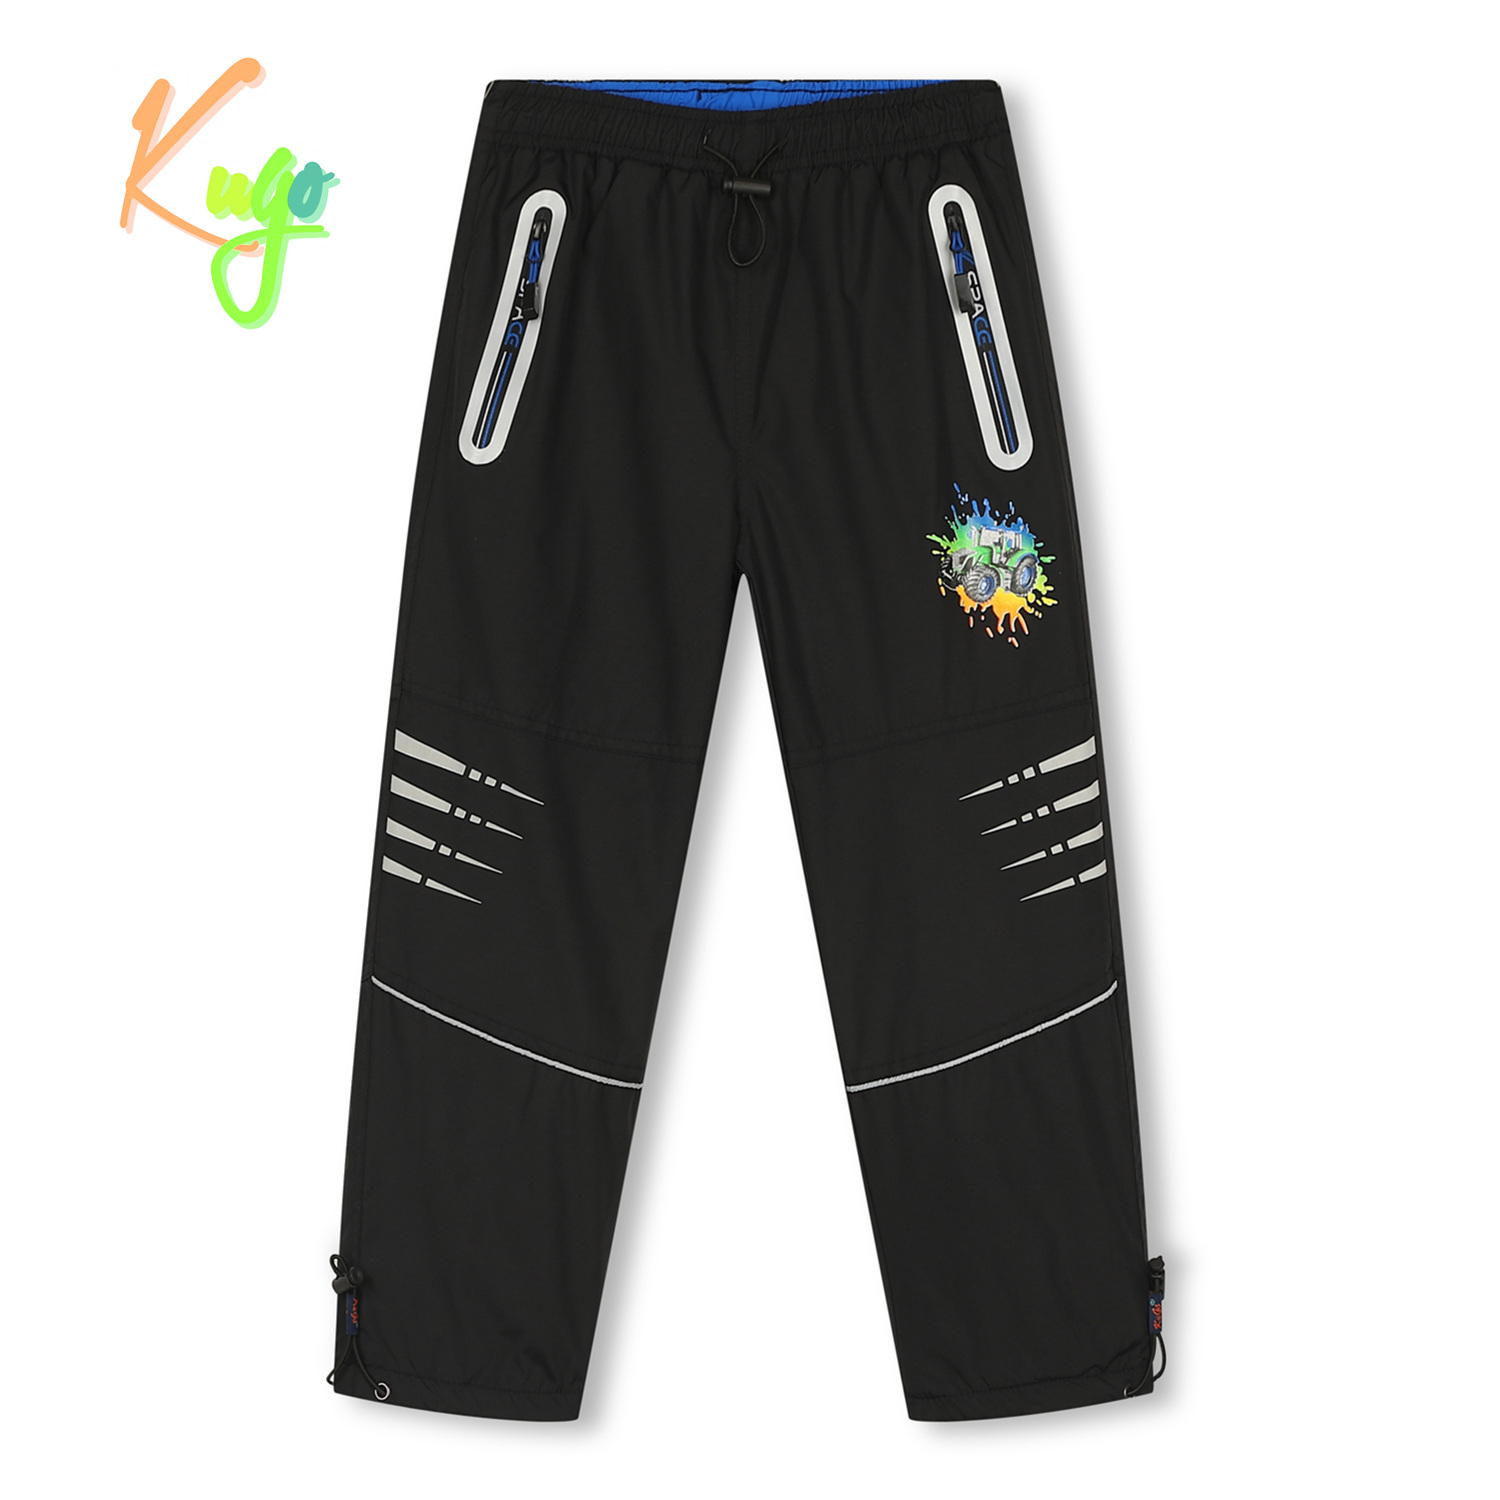 Chlapecké šusťákové kalhoty, zateplené - KUGO DK7121, celočerná Barva: Černá, Velikost: 98